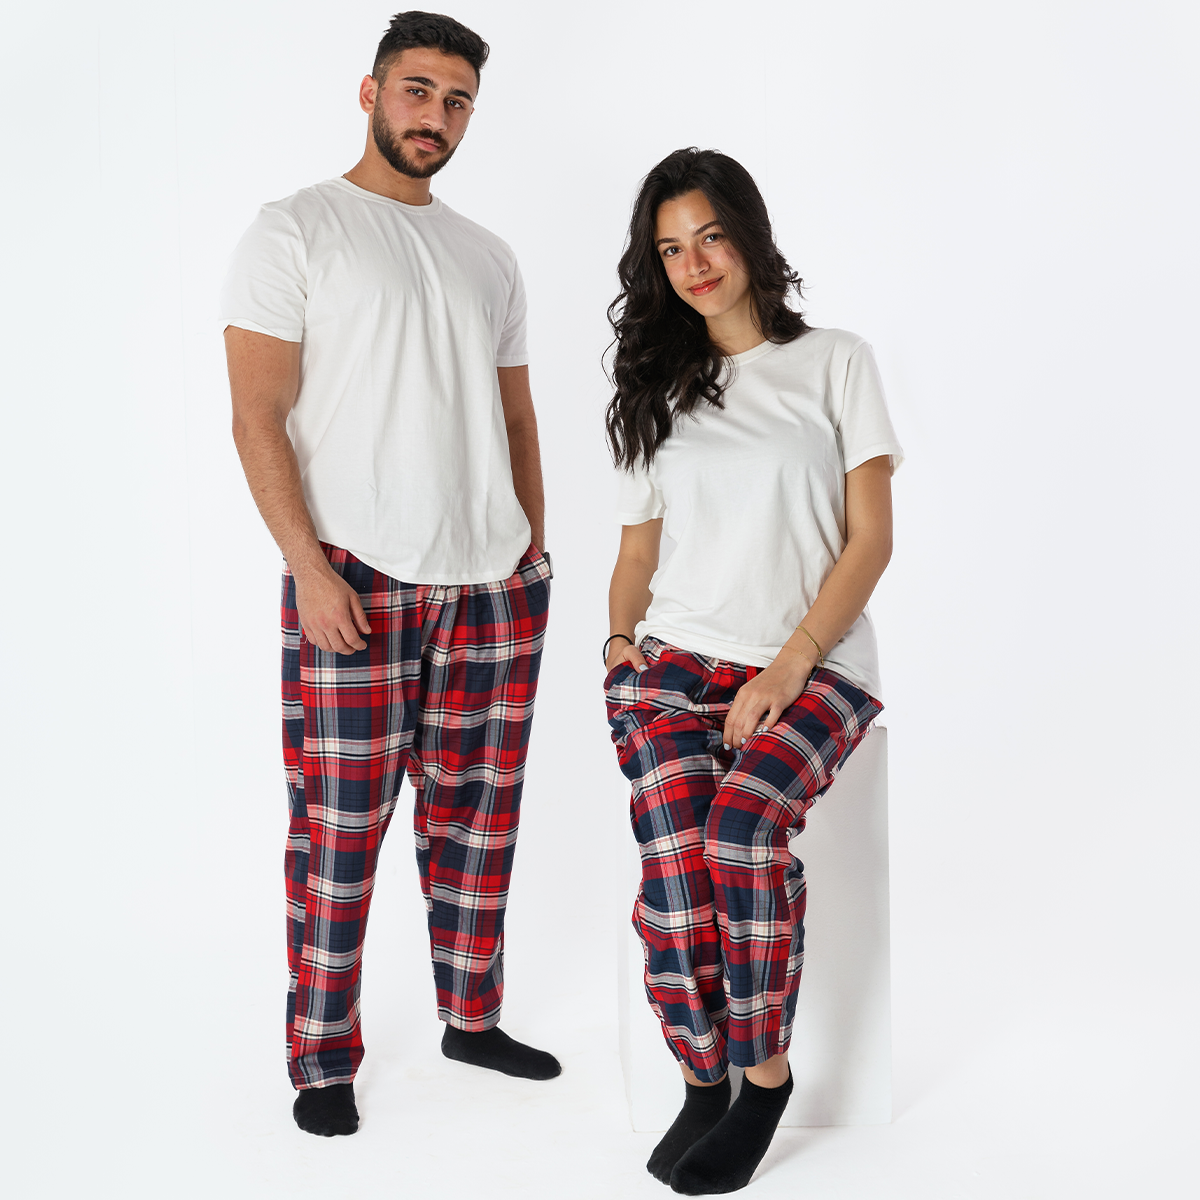 RED Plaid Pyjama Pants set